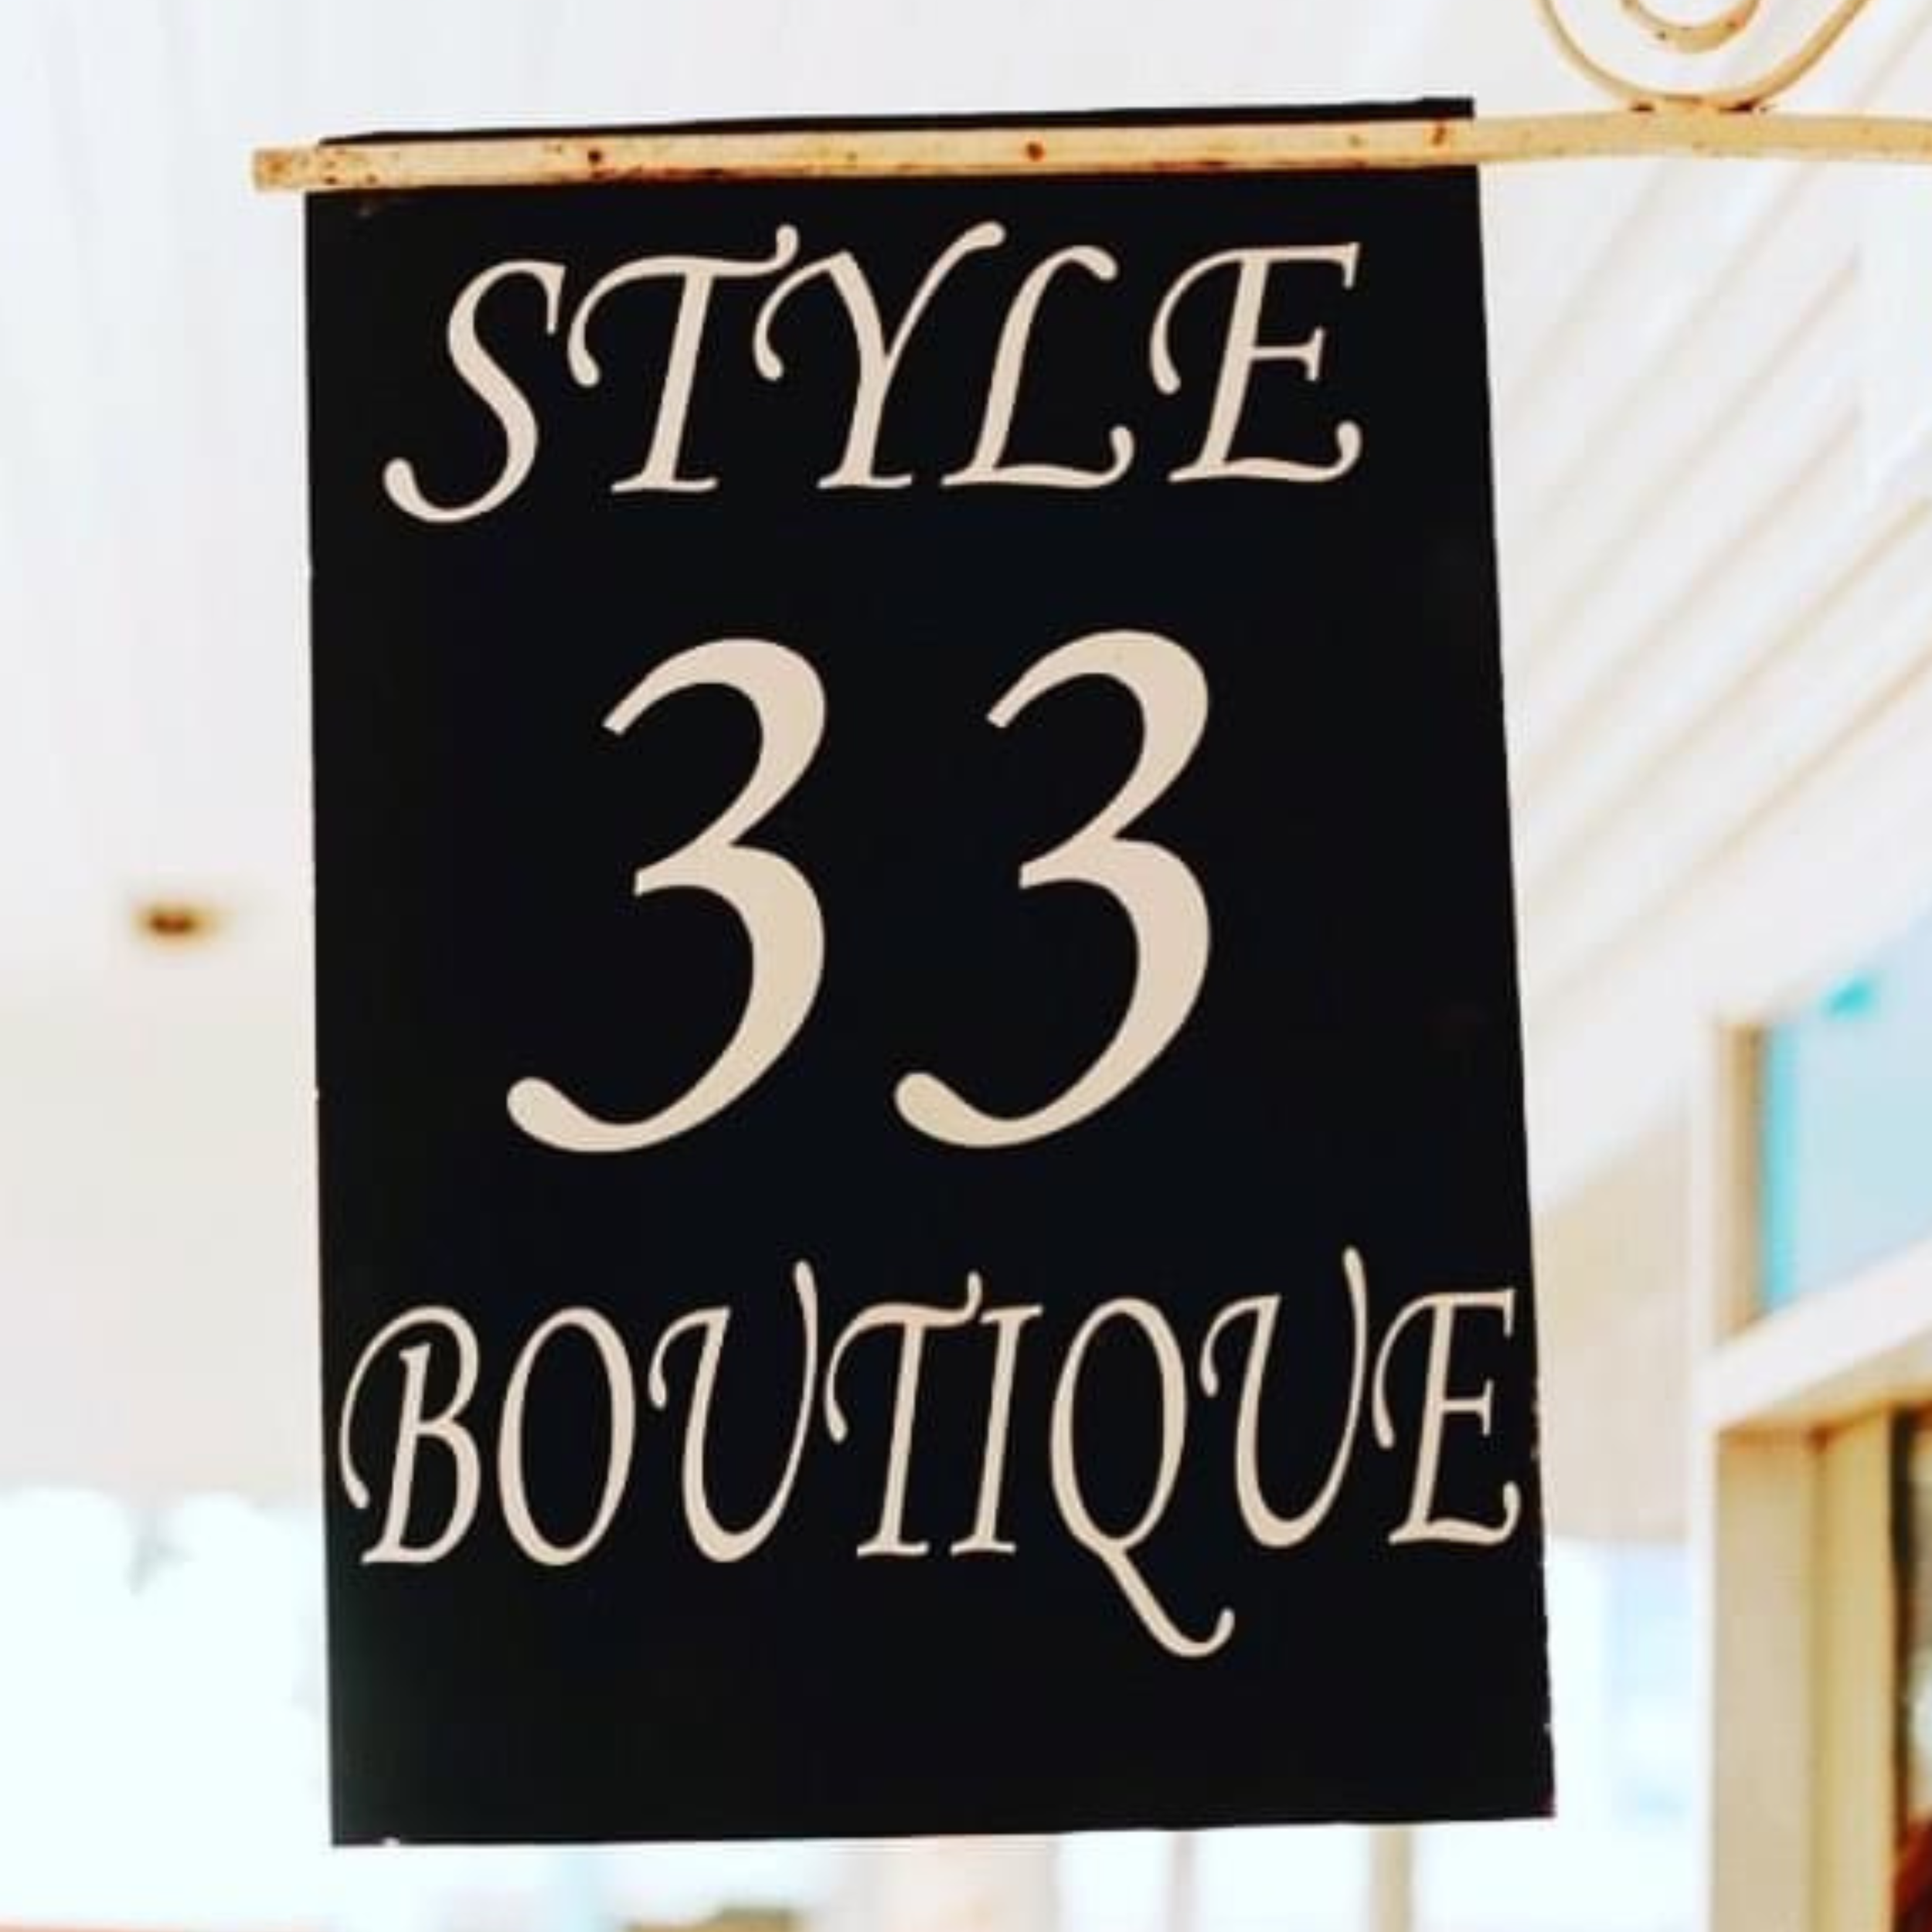 Style 33 Boutique